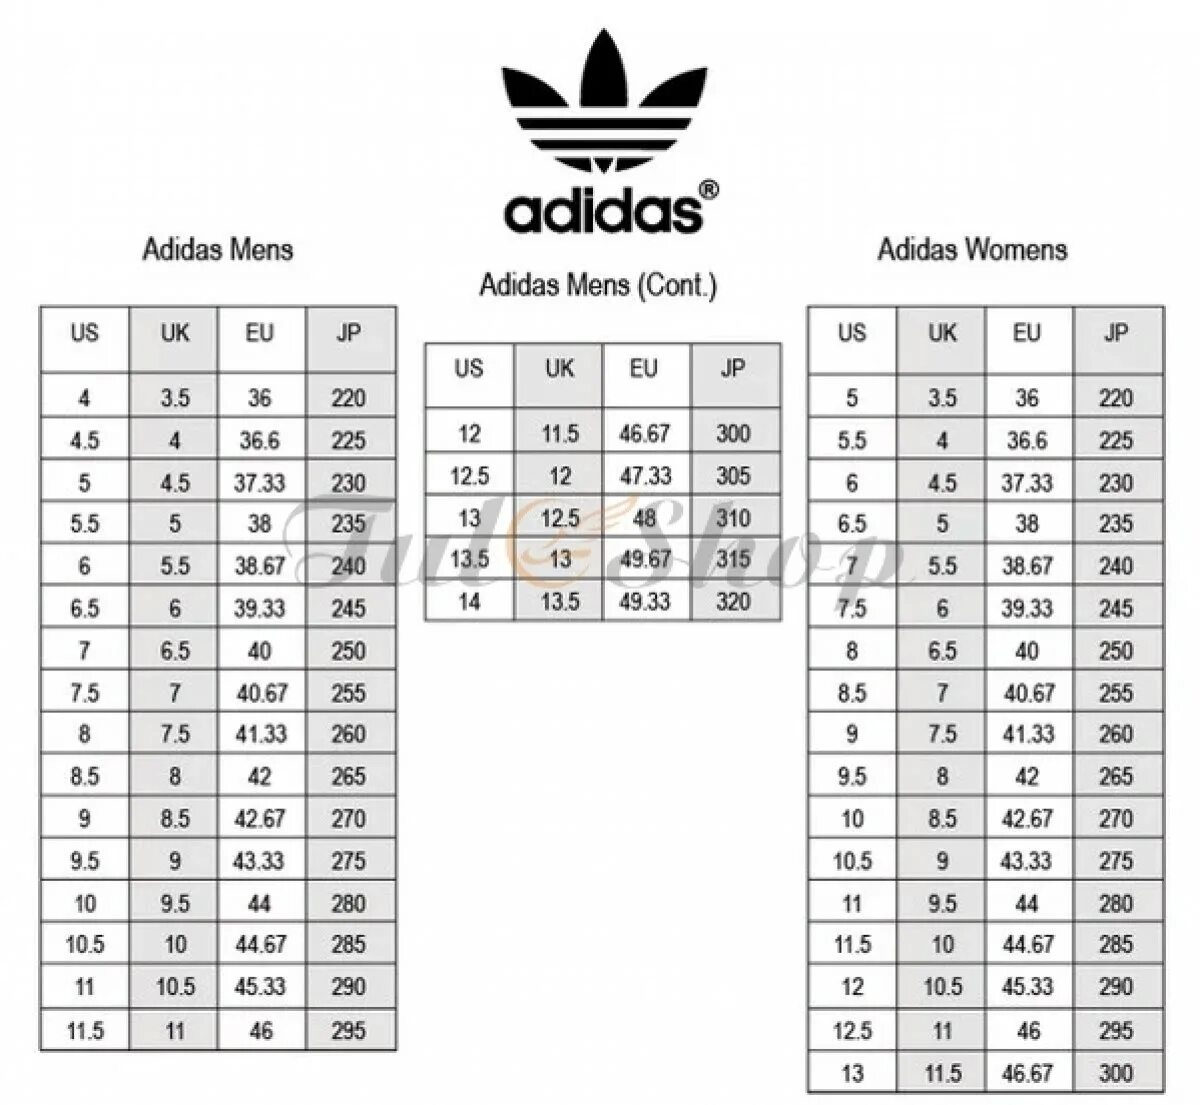 Us 7 12 5. Us 10 размер обуви мужской adidas. Размер 10.5 us адидас. Adidas Superstar Размерная сетка. 8us размер обуви adidas.